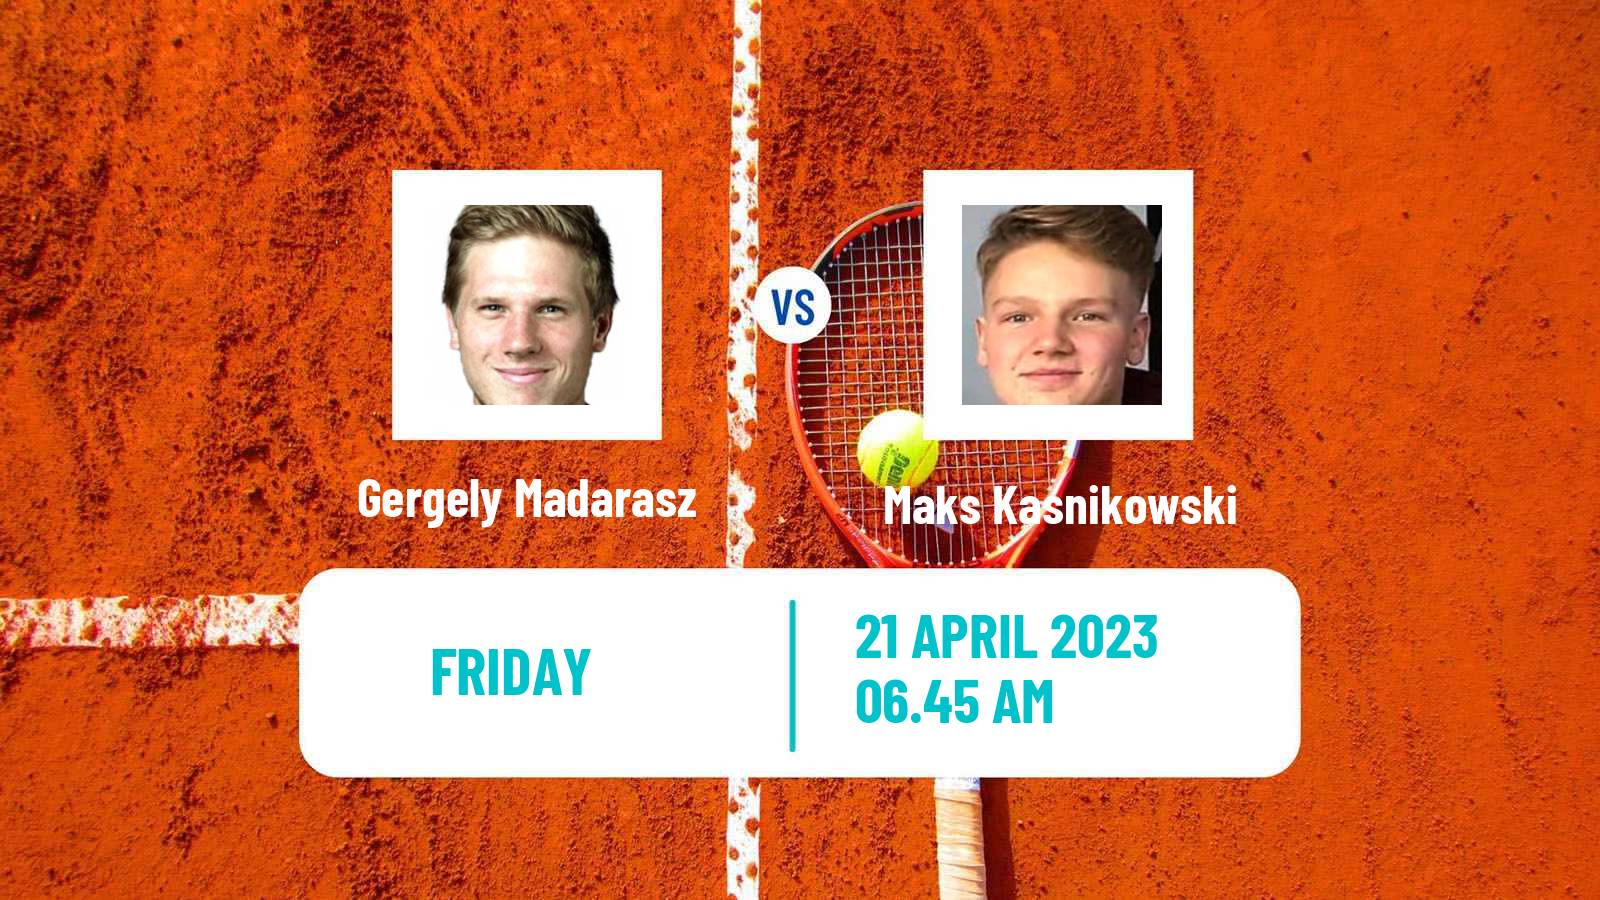 Tennis ITF Tournaments Gergely Madarasz - Maks Kasnikowski